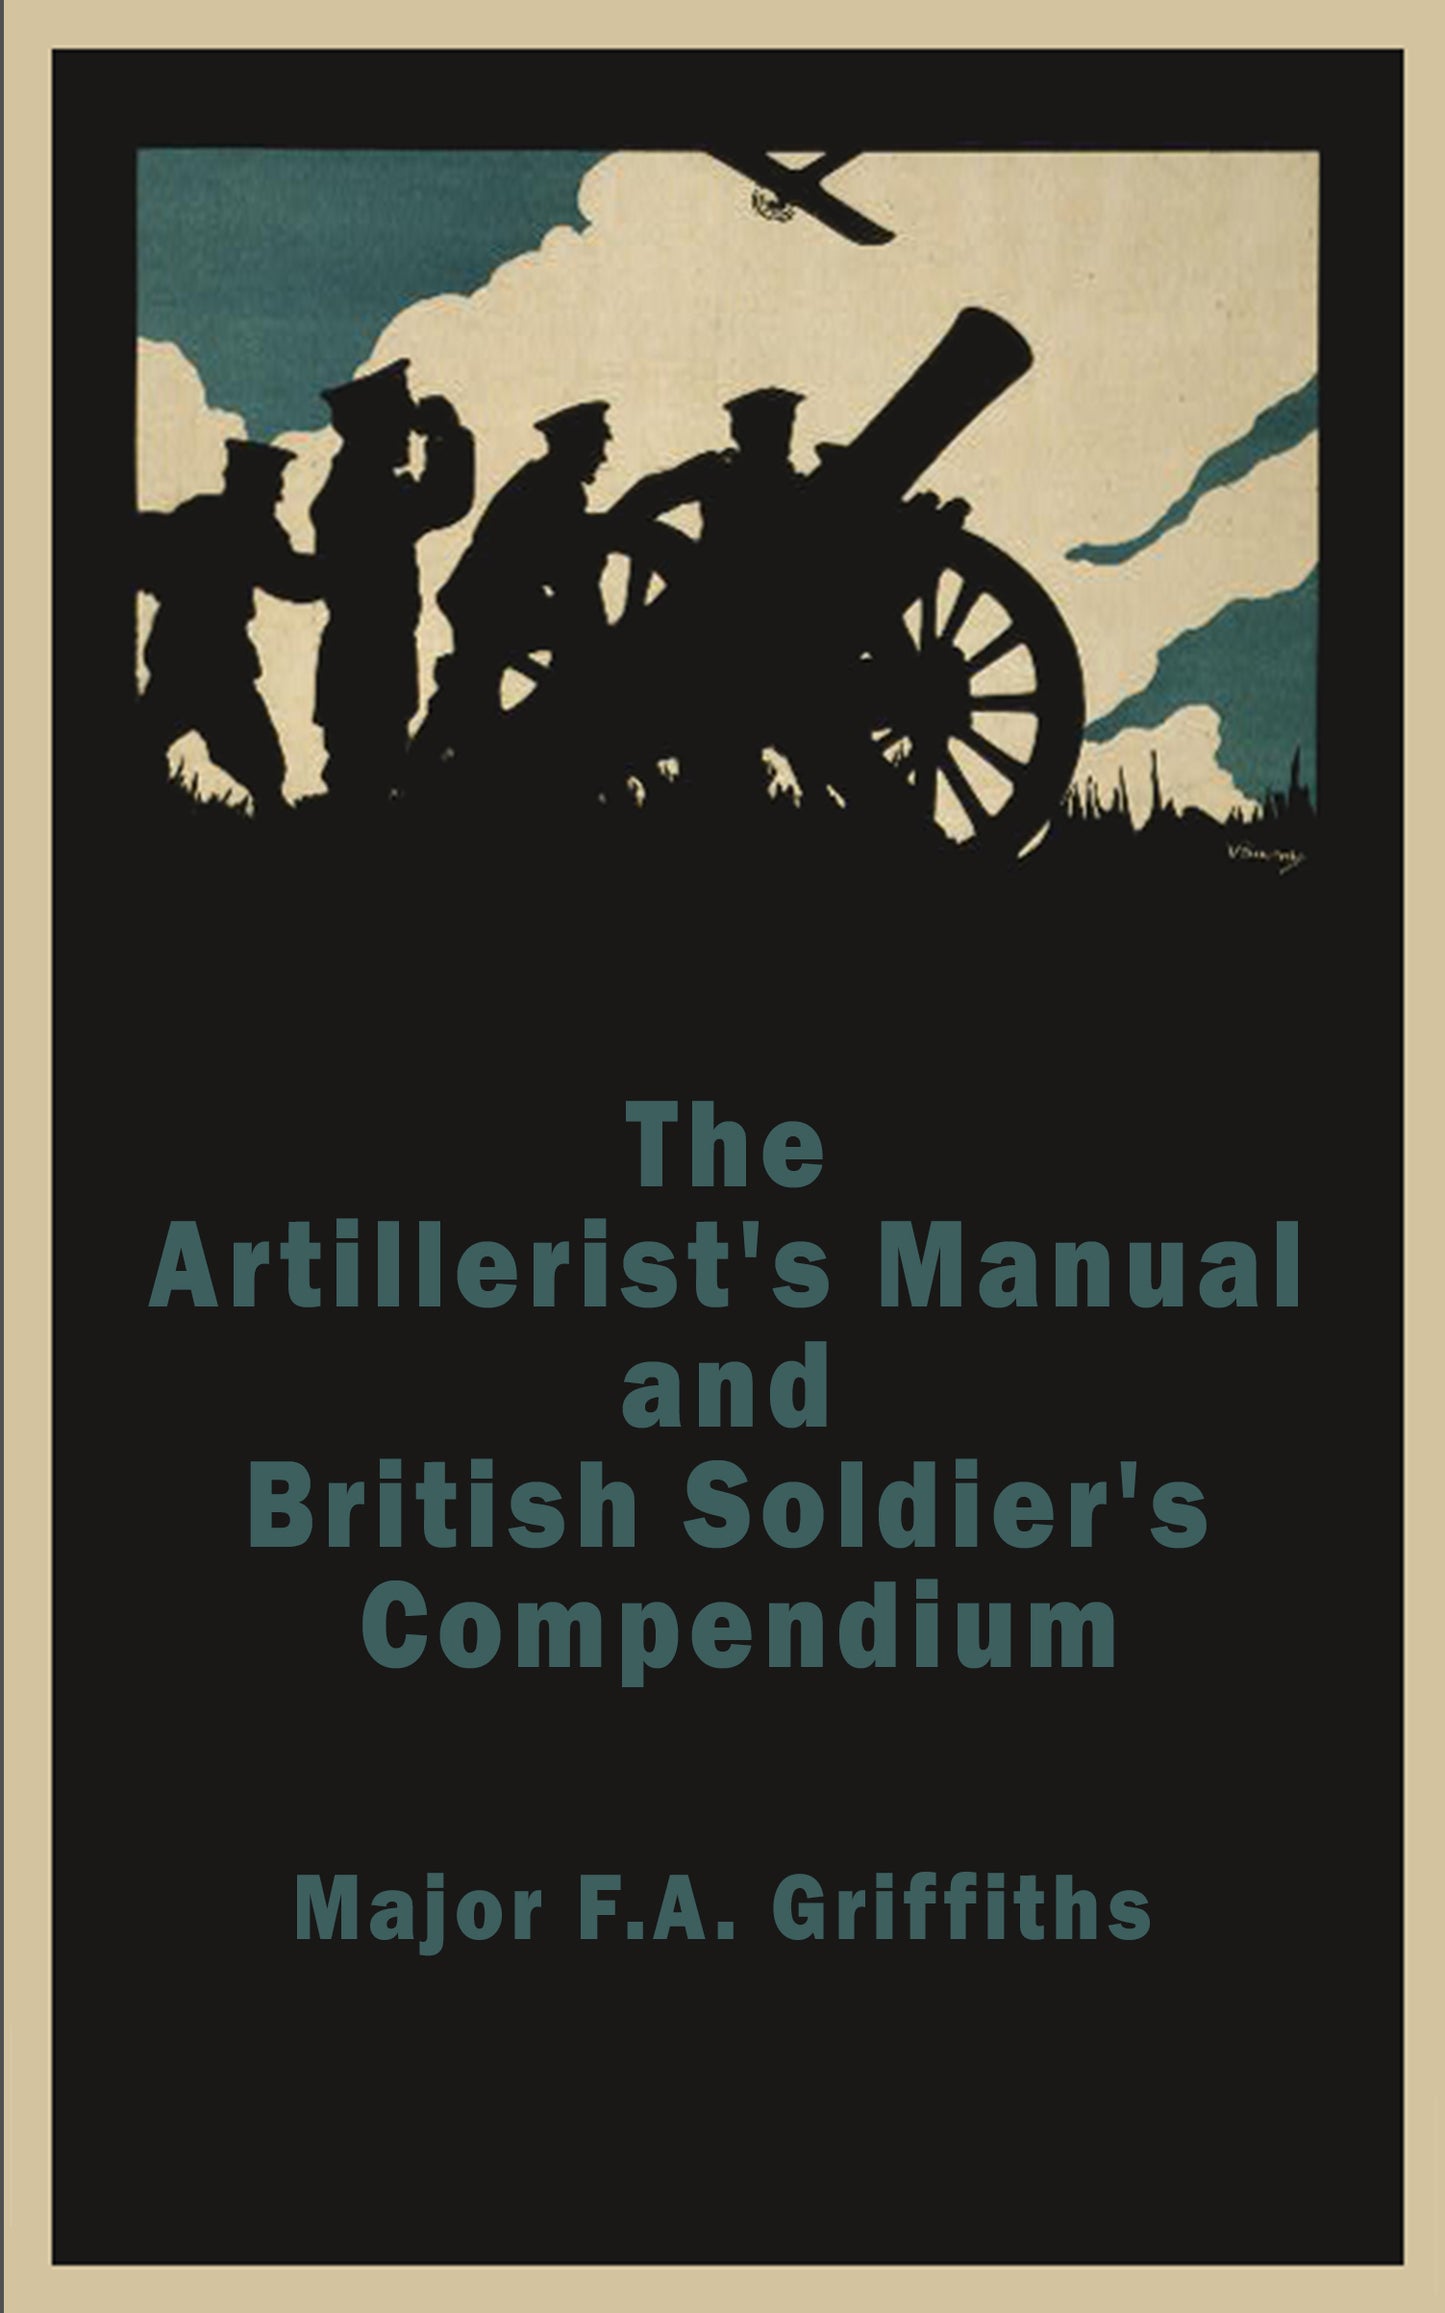 The Artillerist's Manual and British Soldier's Compendium